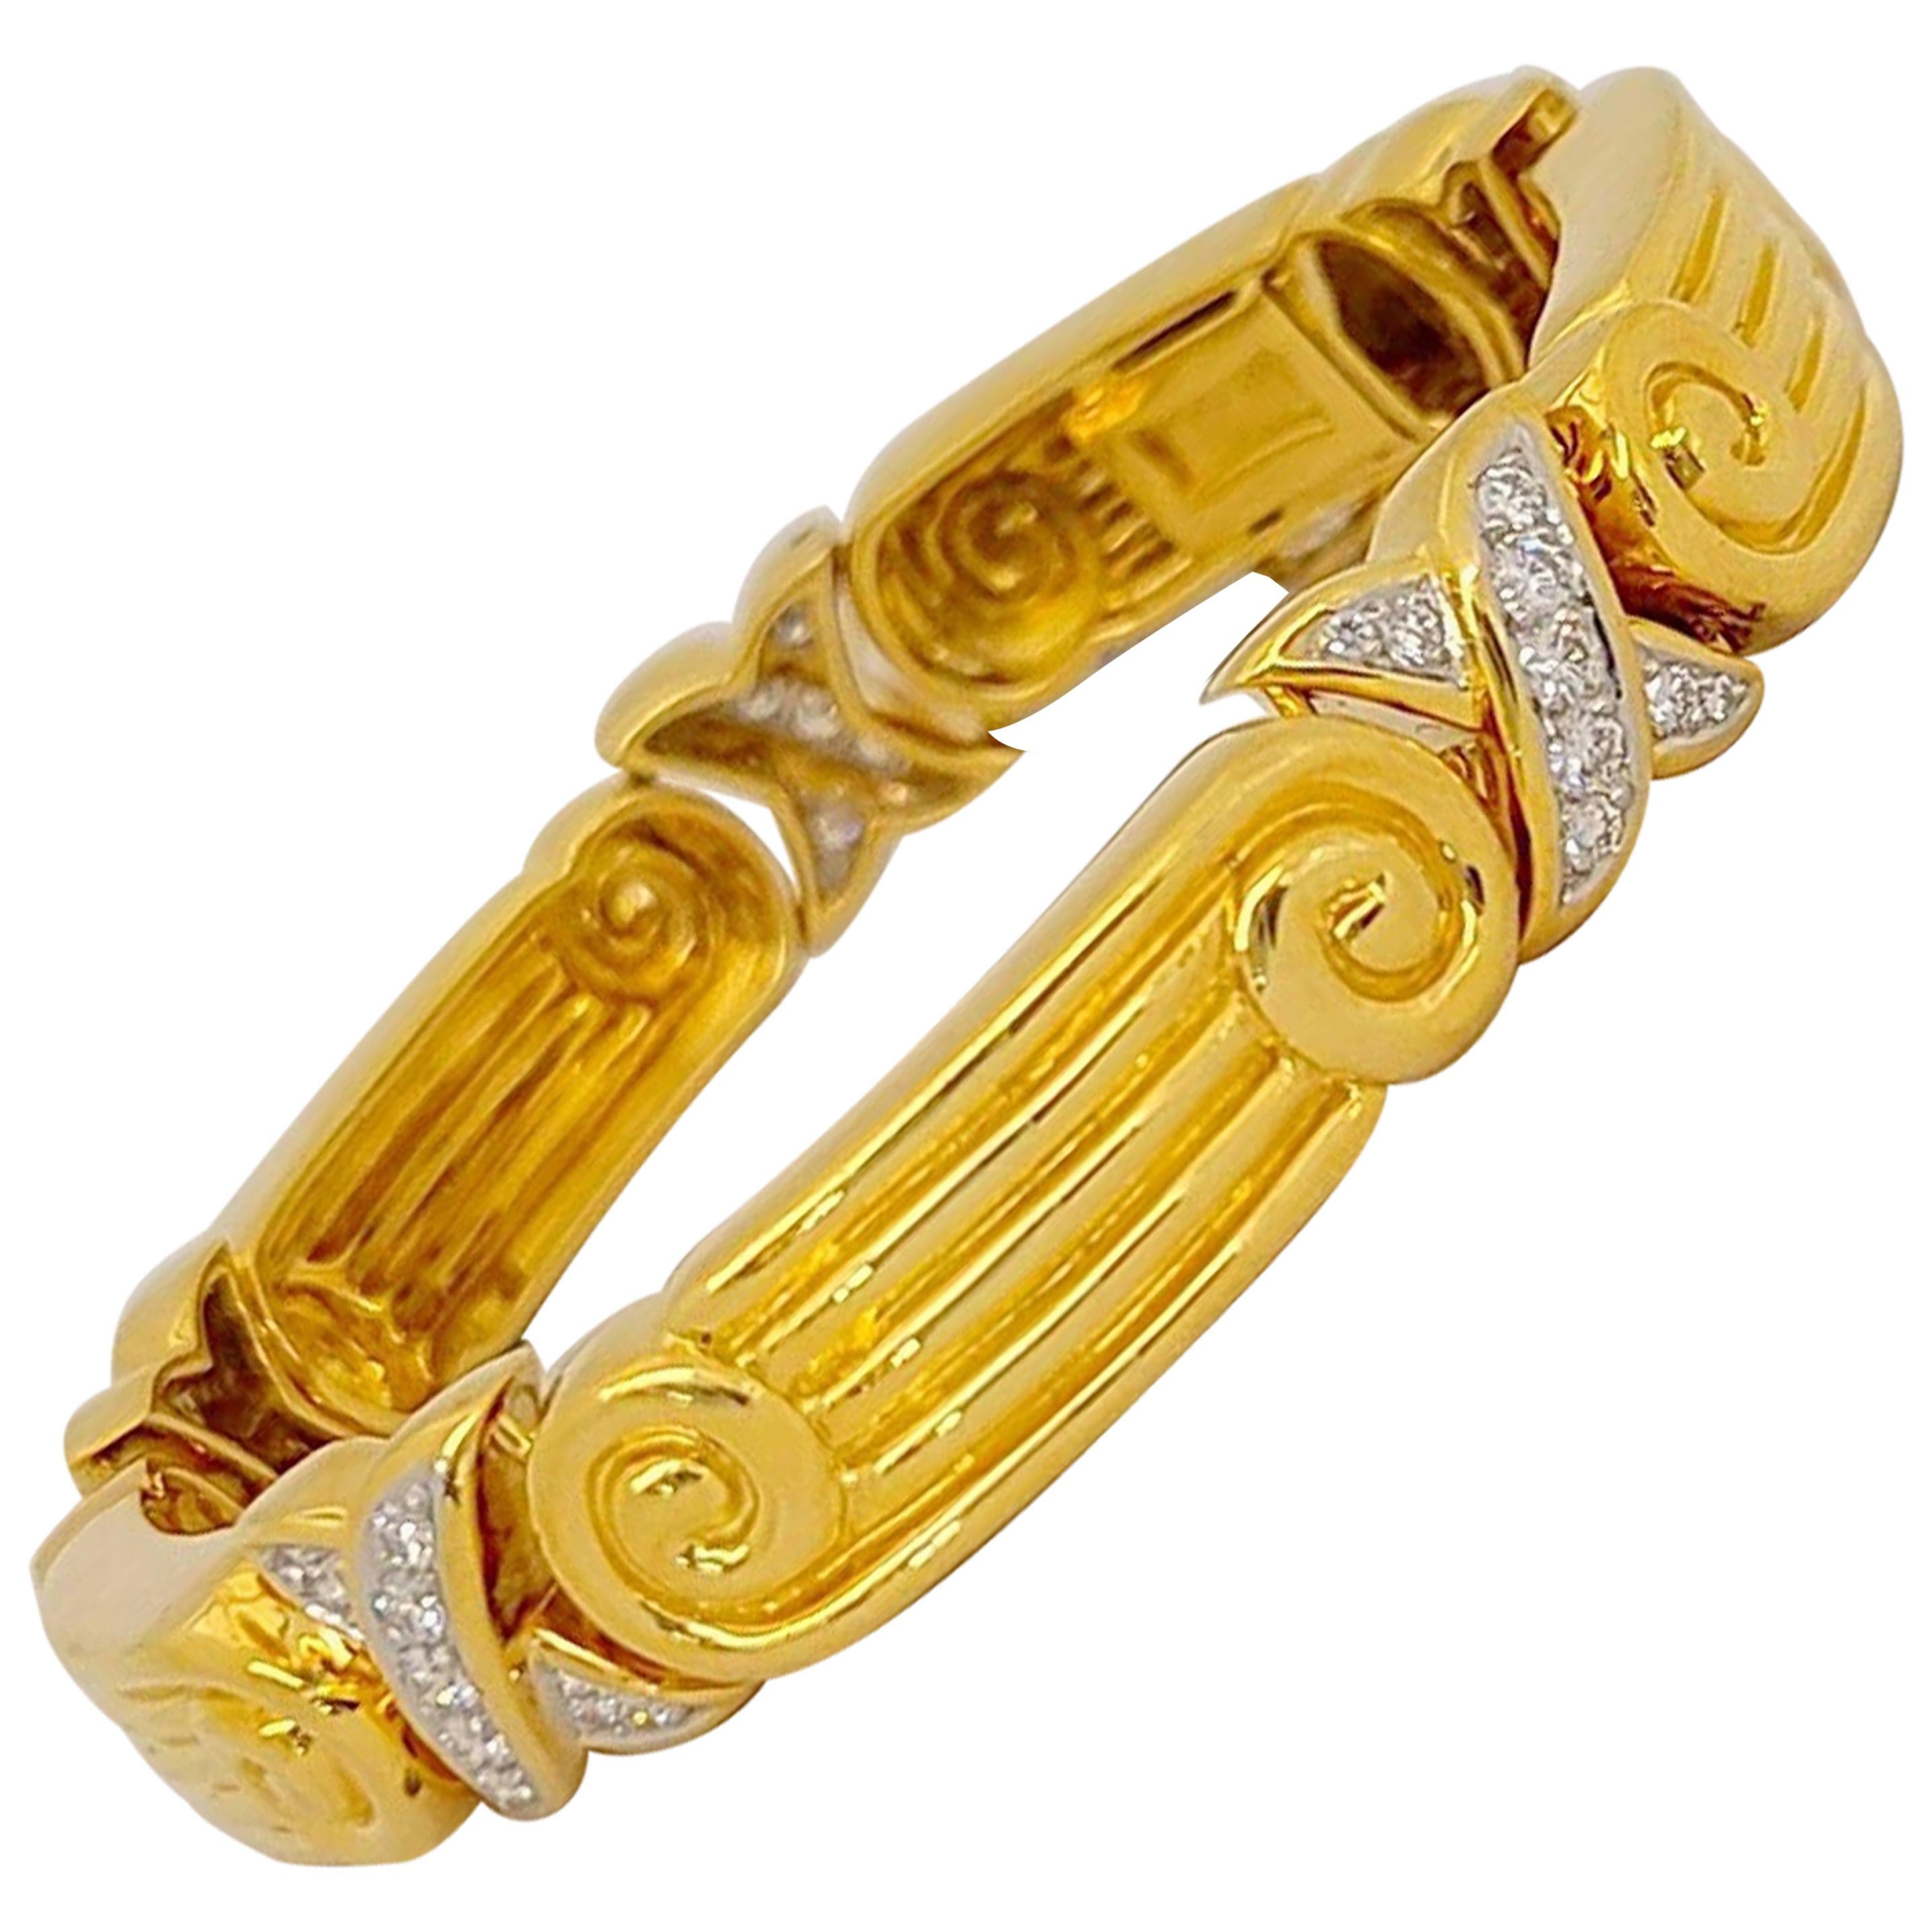 Chaavae Armband aus 18 Karat Gelbgold, Platin und Diamanten mit 1,12 Karat